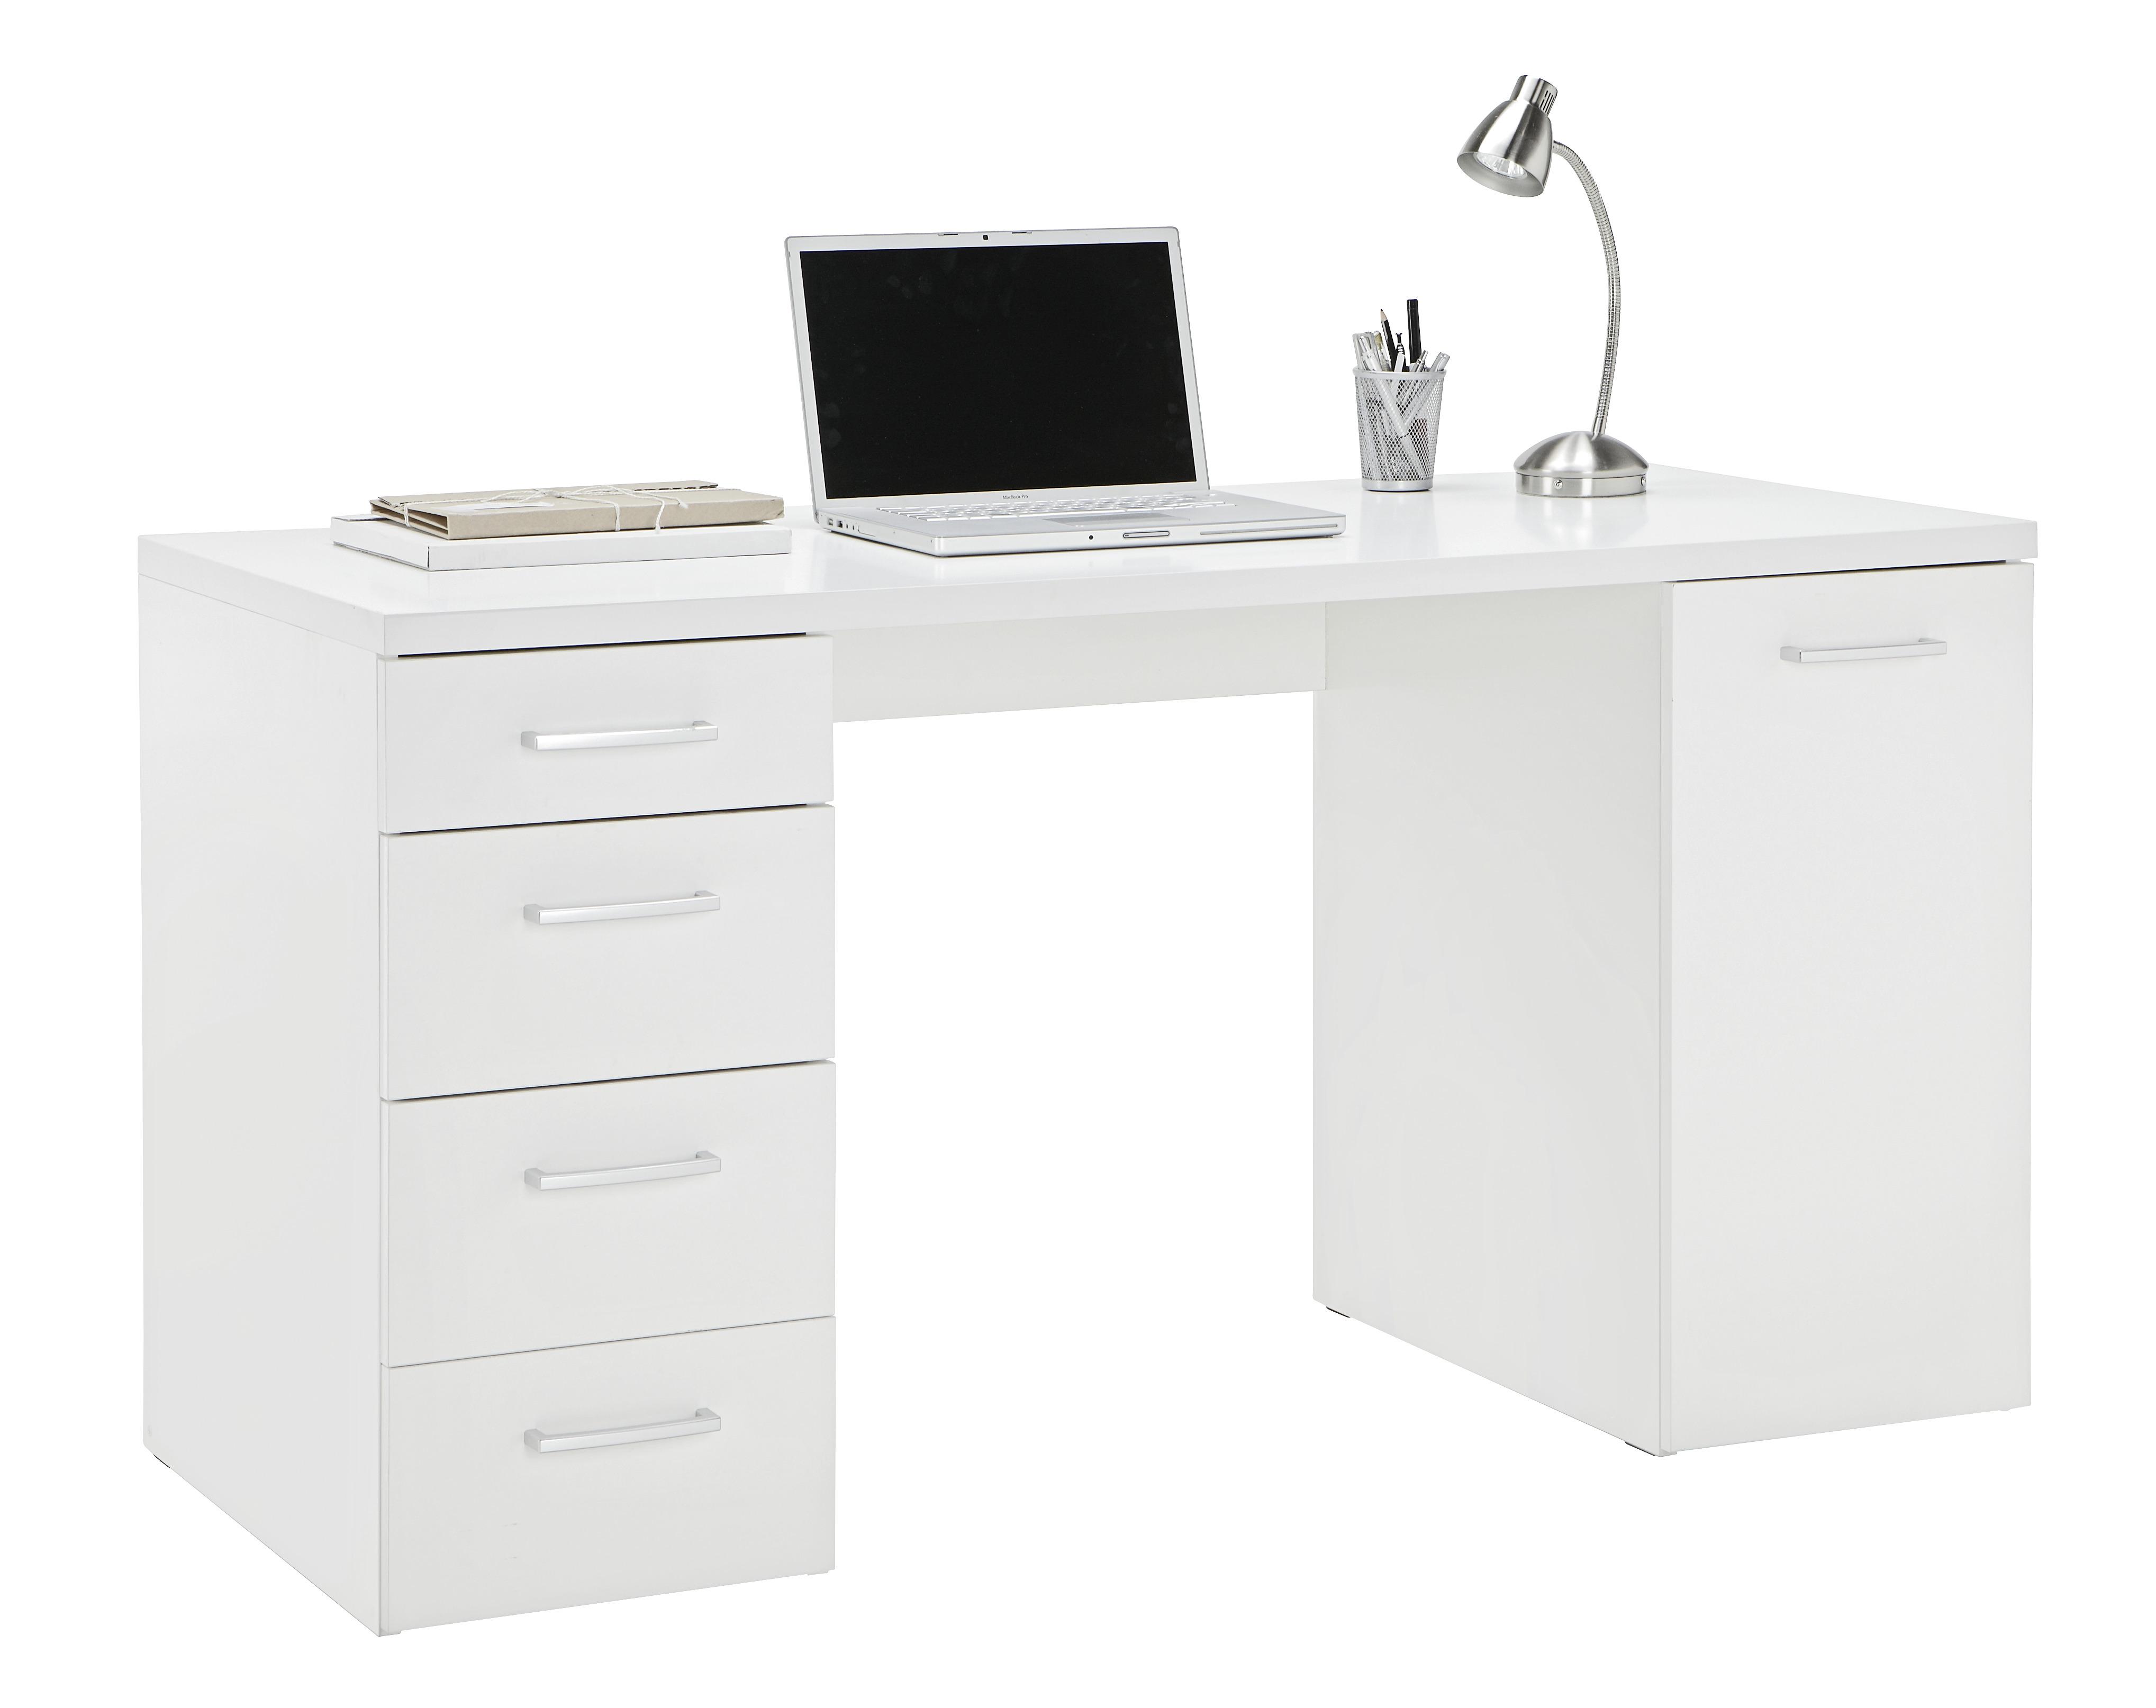 Schreibtisch in Weiss - Weiss/Alufarben, Konventionell, Kunststoff (139/74/60cm) - Modern Living